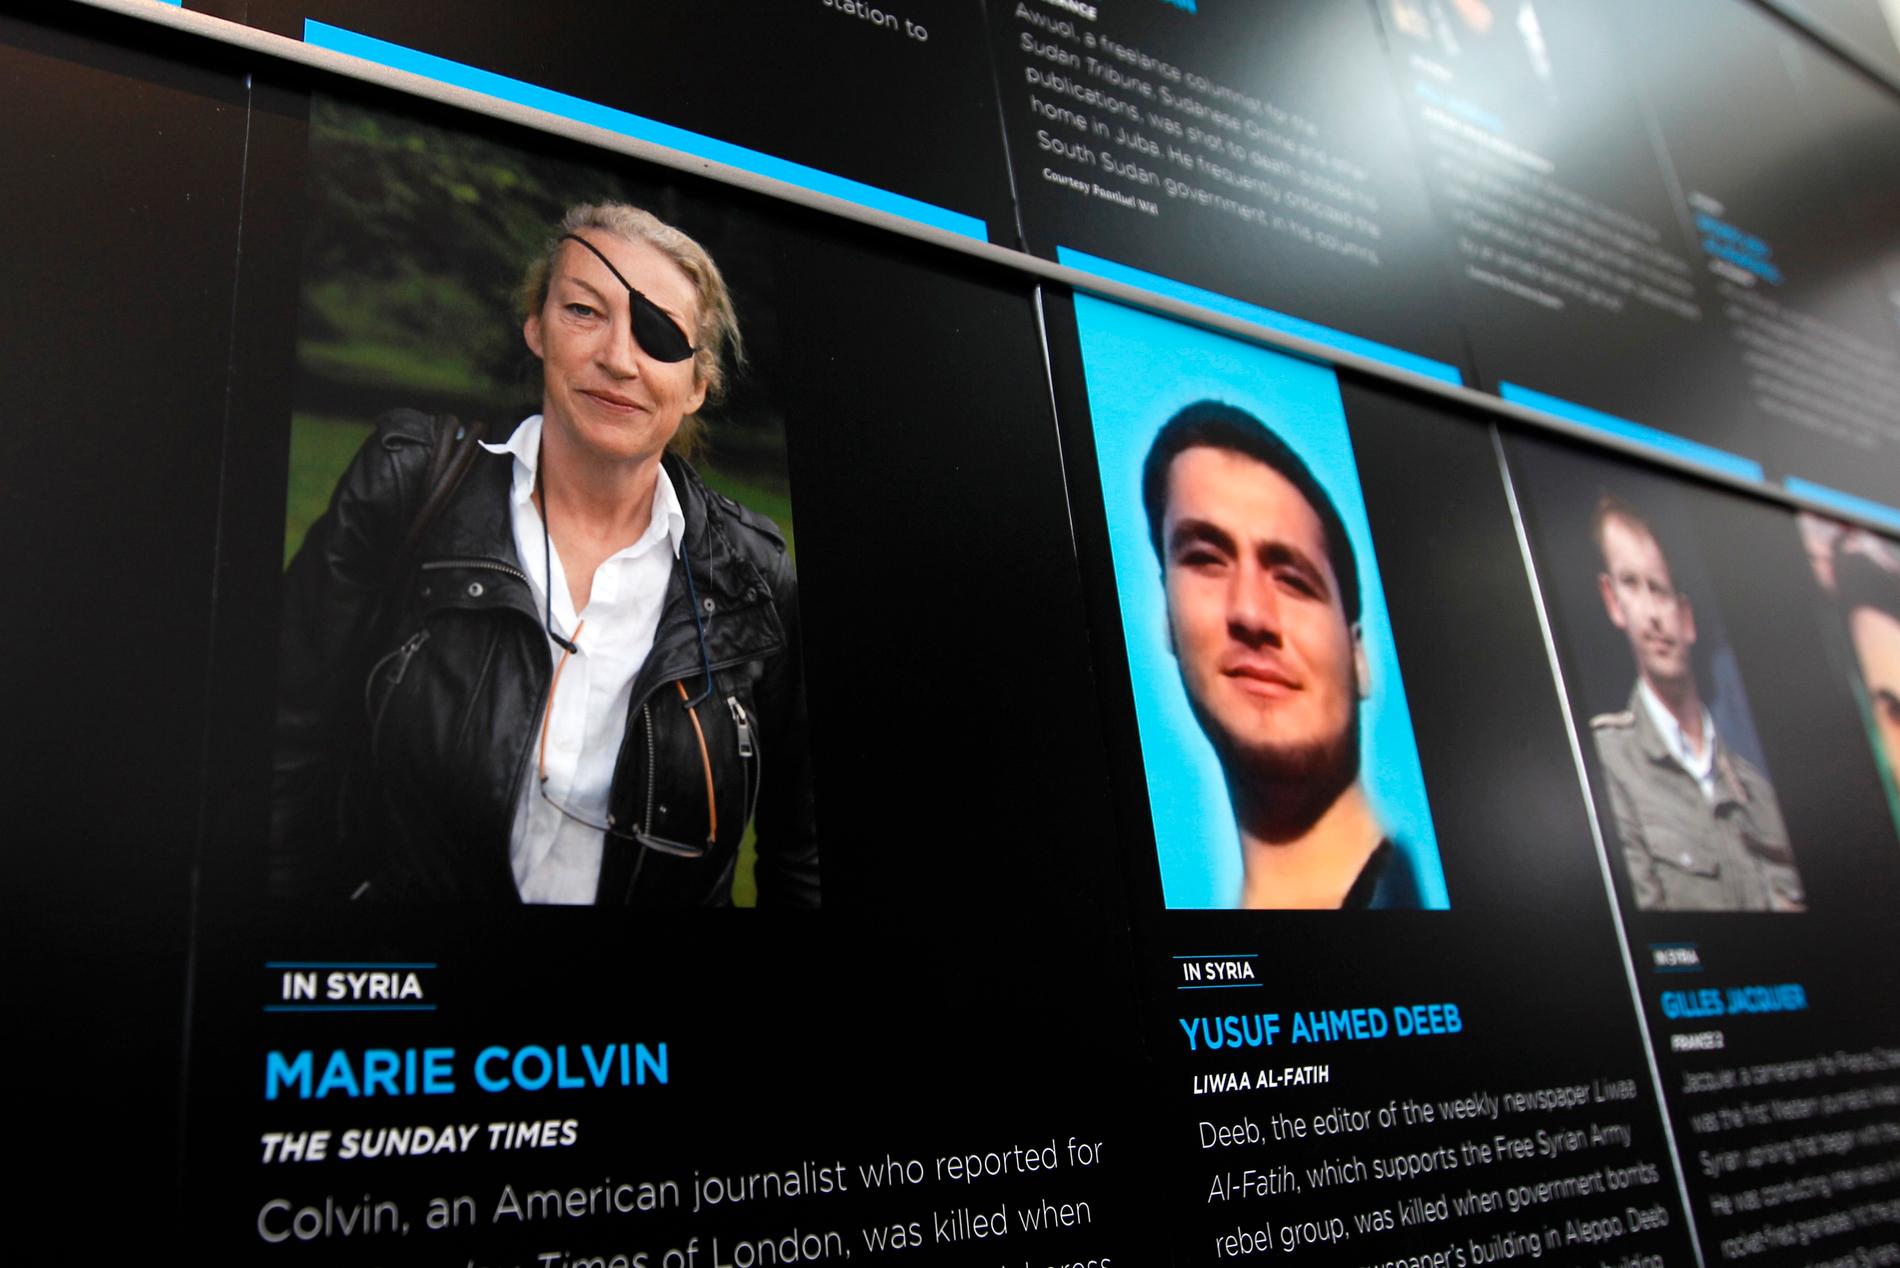 Krigskorrespondenten Marie Colvin var en av de personer som dog i samband med anfallet mot mediecentret i Baba amr i Homs i västra Syrien 2012. Bild från museet Newseum i Washington, USA, 2012.